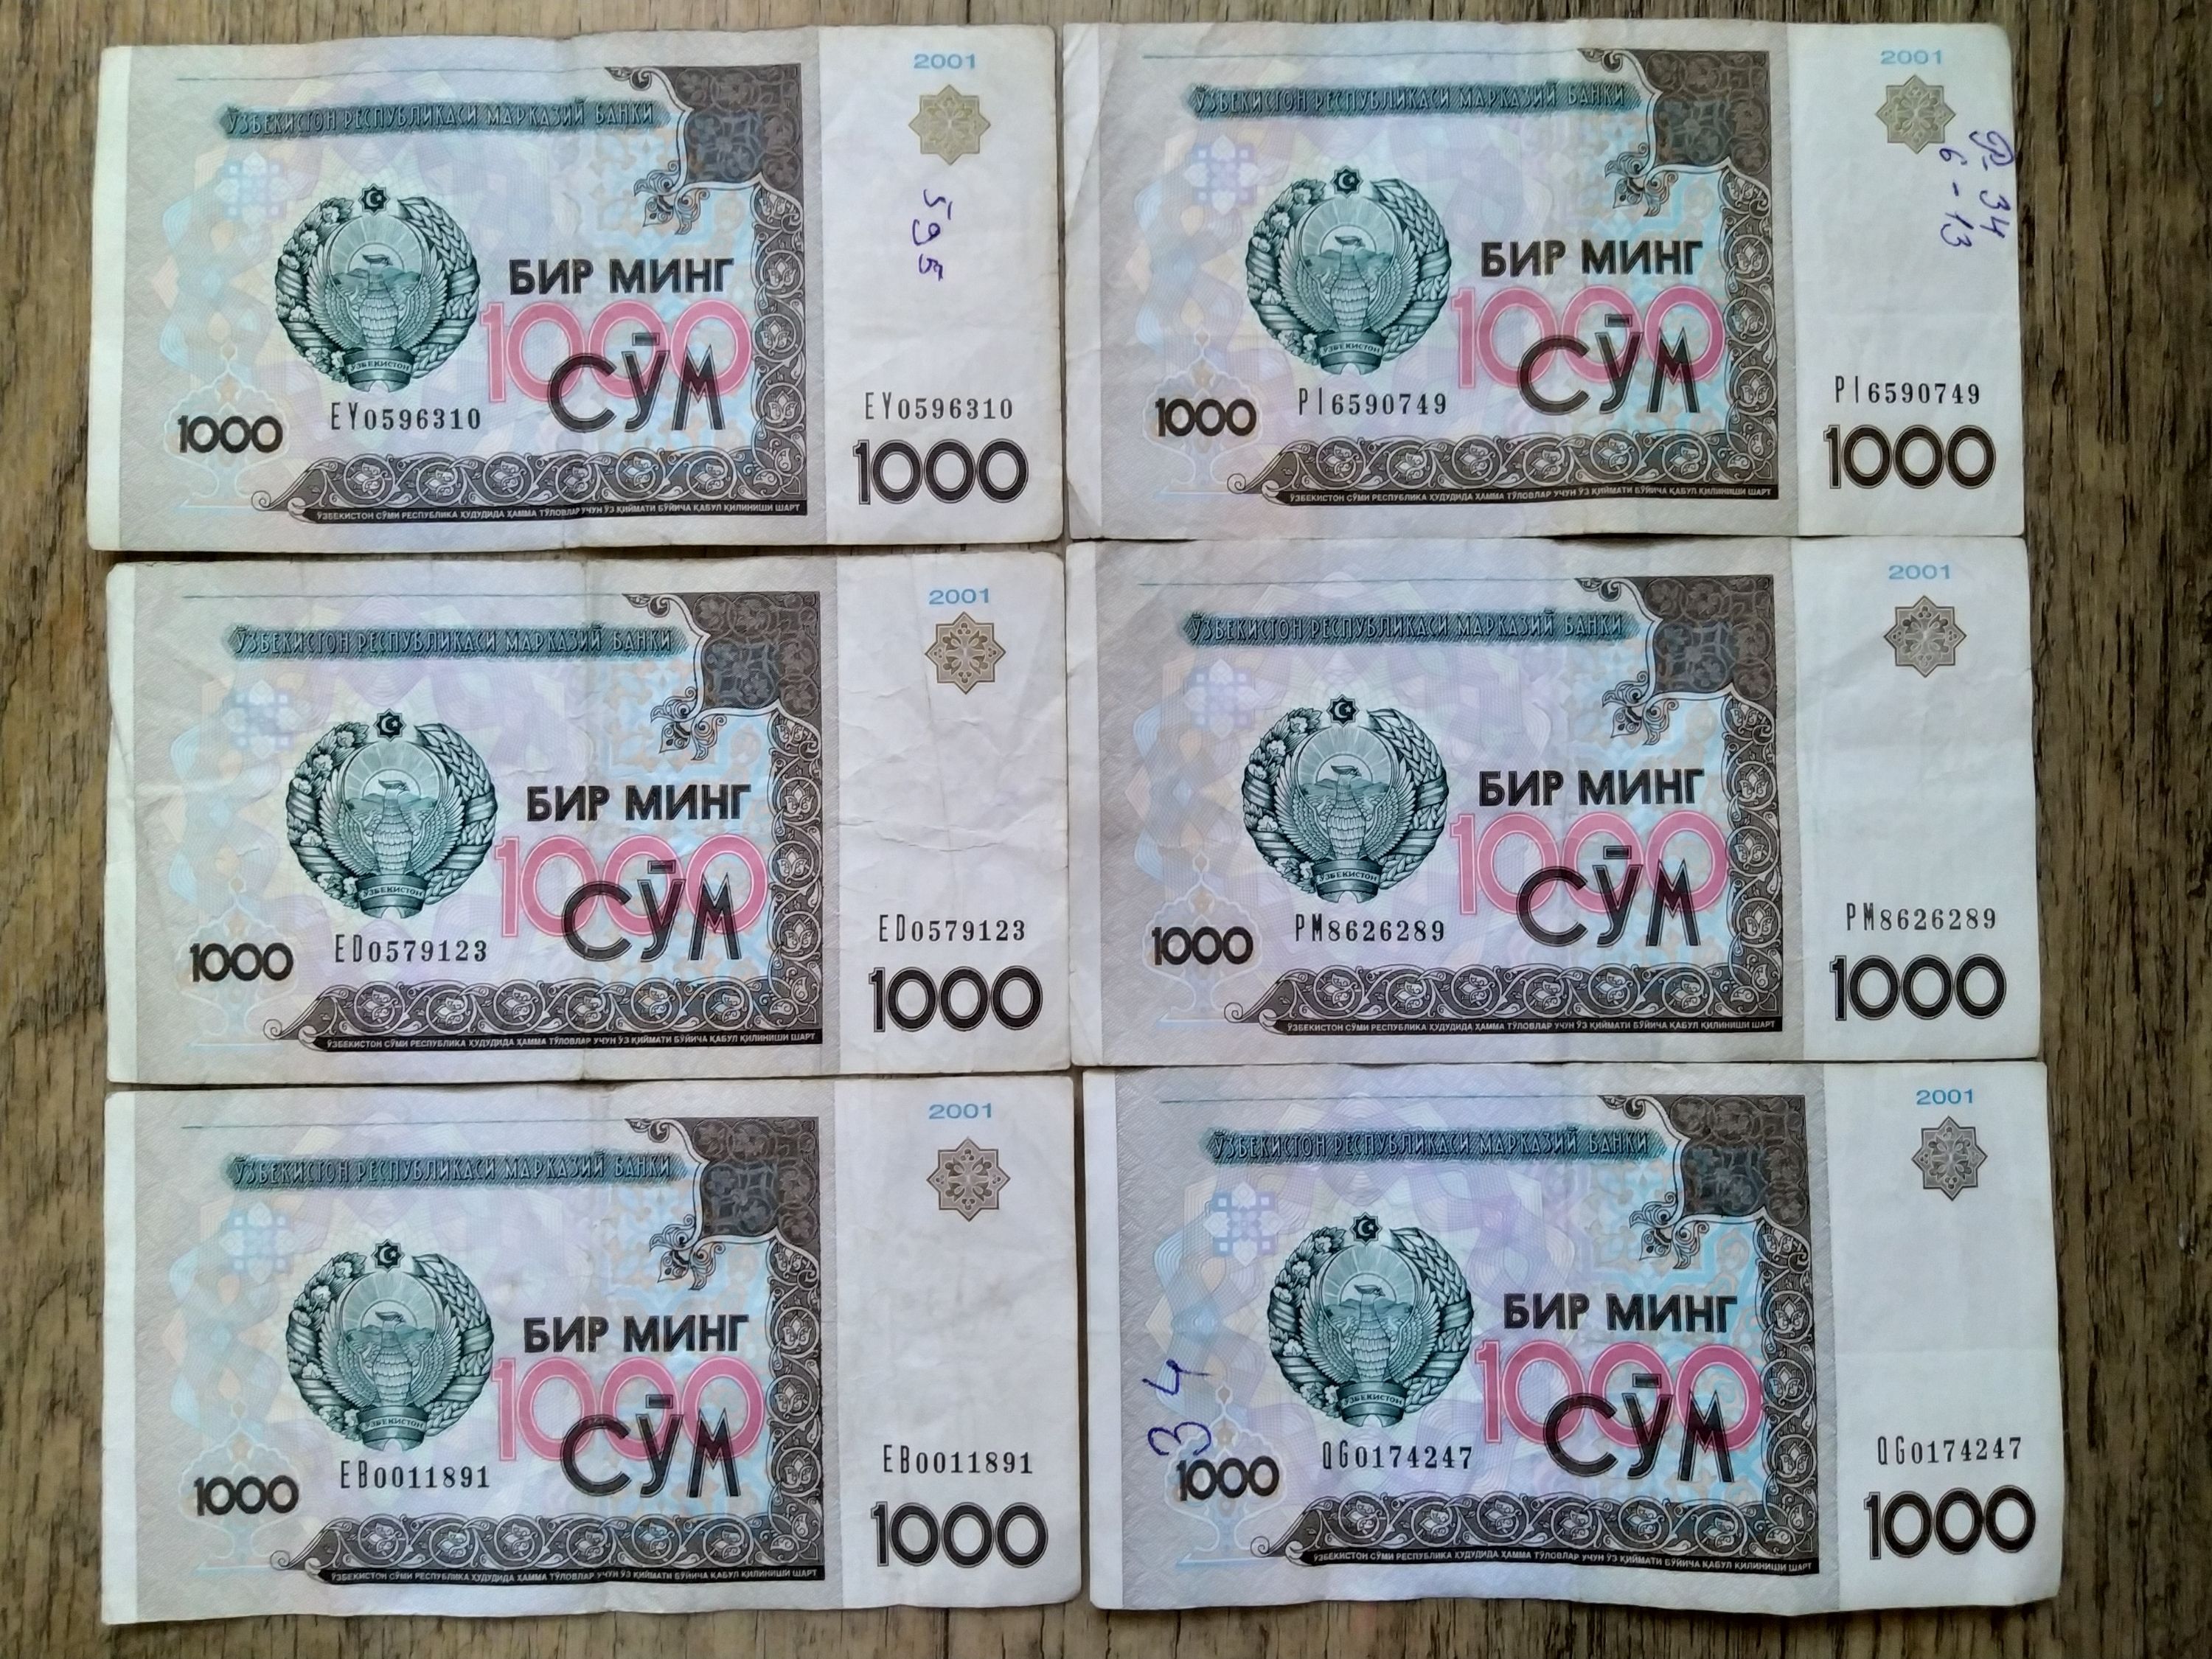 5 рублей в сумах. 1000 Сум. Купюры Узбекистана. Банкноты Узбекистан 1998. Узбекистан купюру покажи.